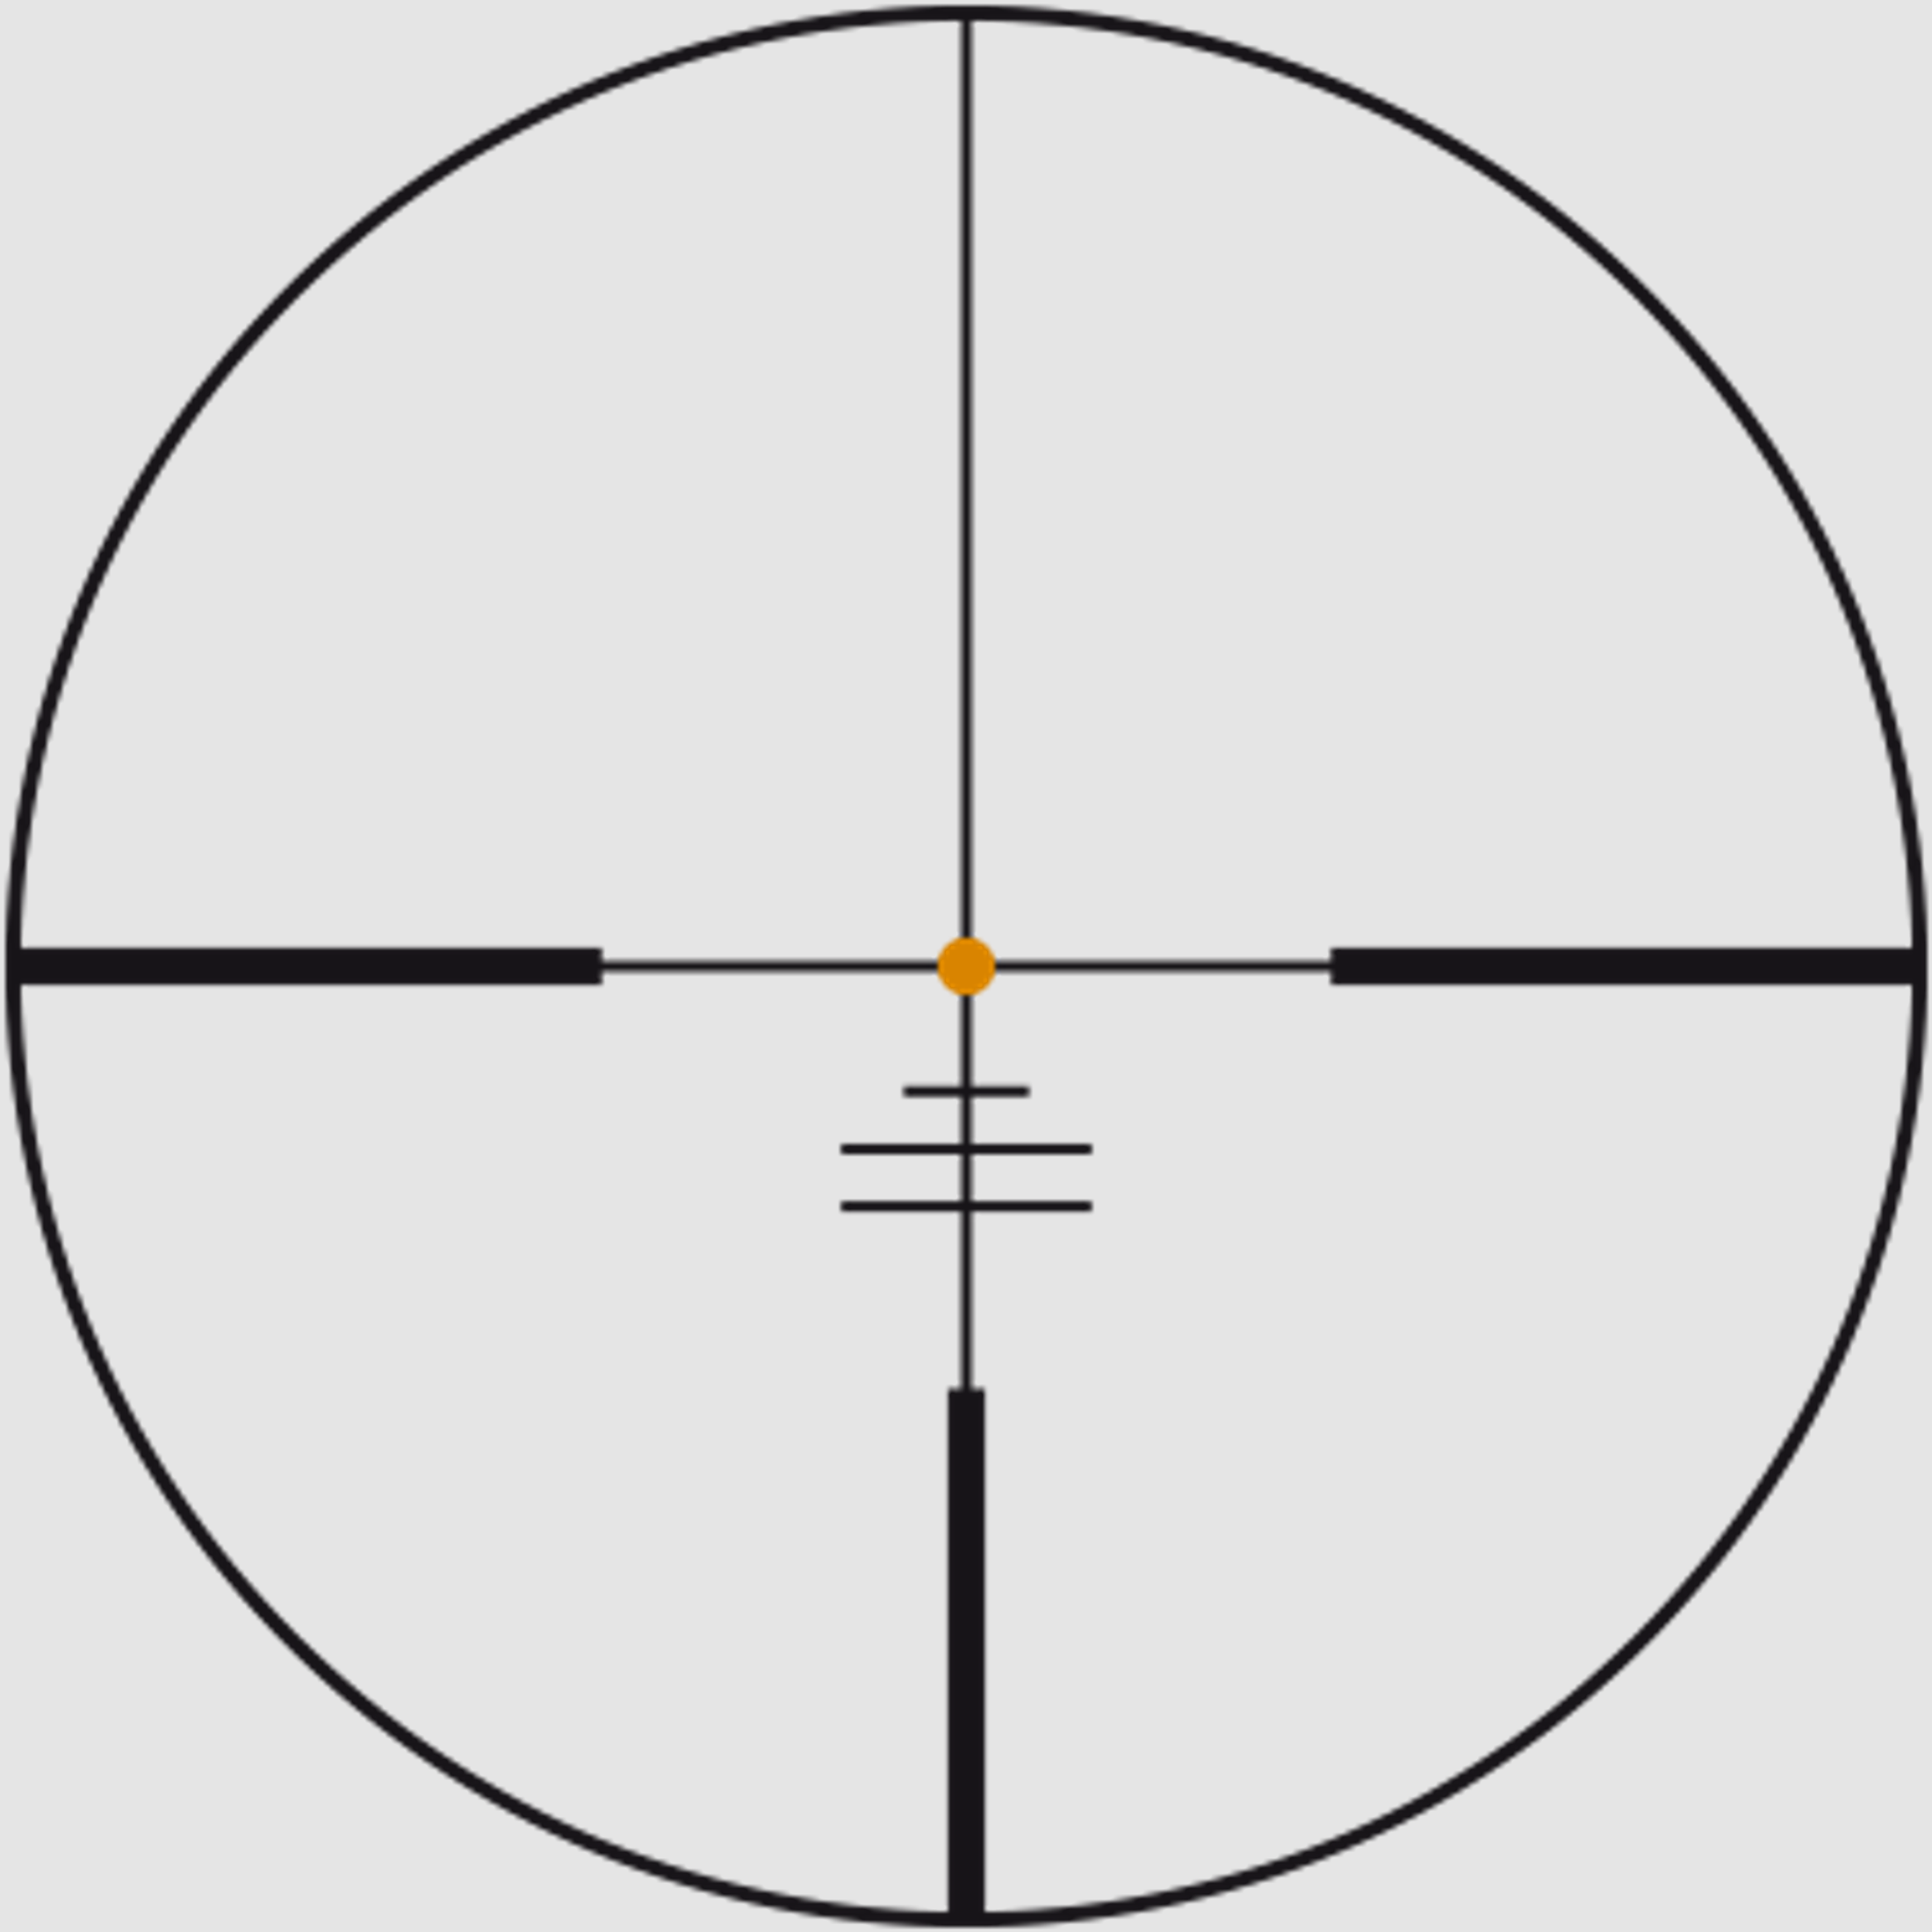 SWAROVSKI Zielfernrohr mit Leuchtabsehen 2,3-18x56 P Z8i SR Abs. BRX-I